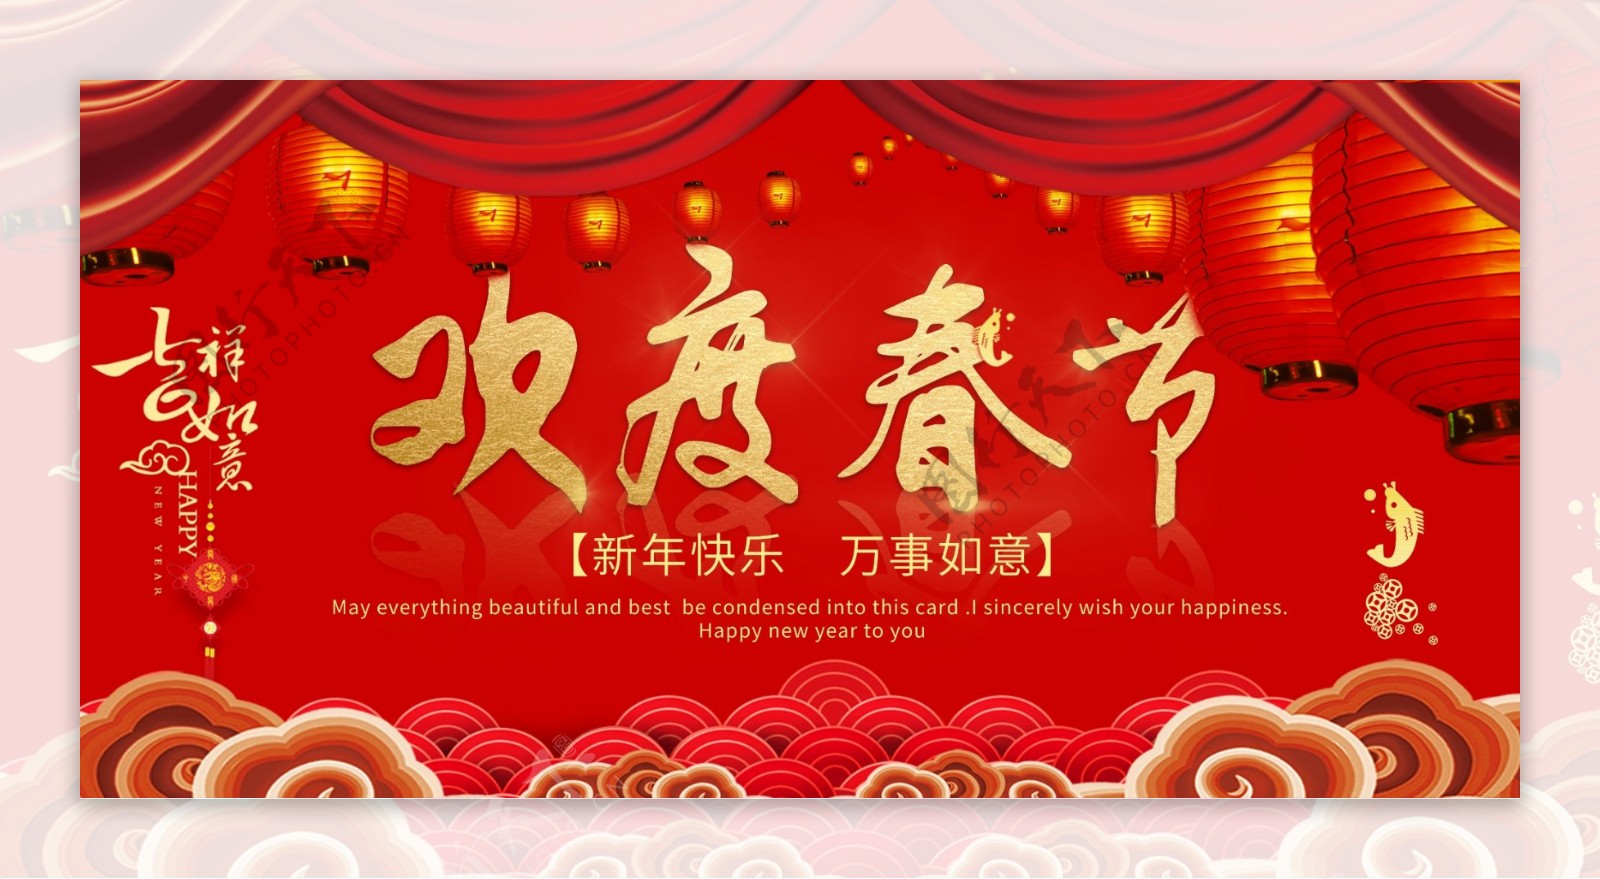 中国风新春红色欢度春节节日展板